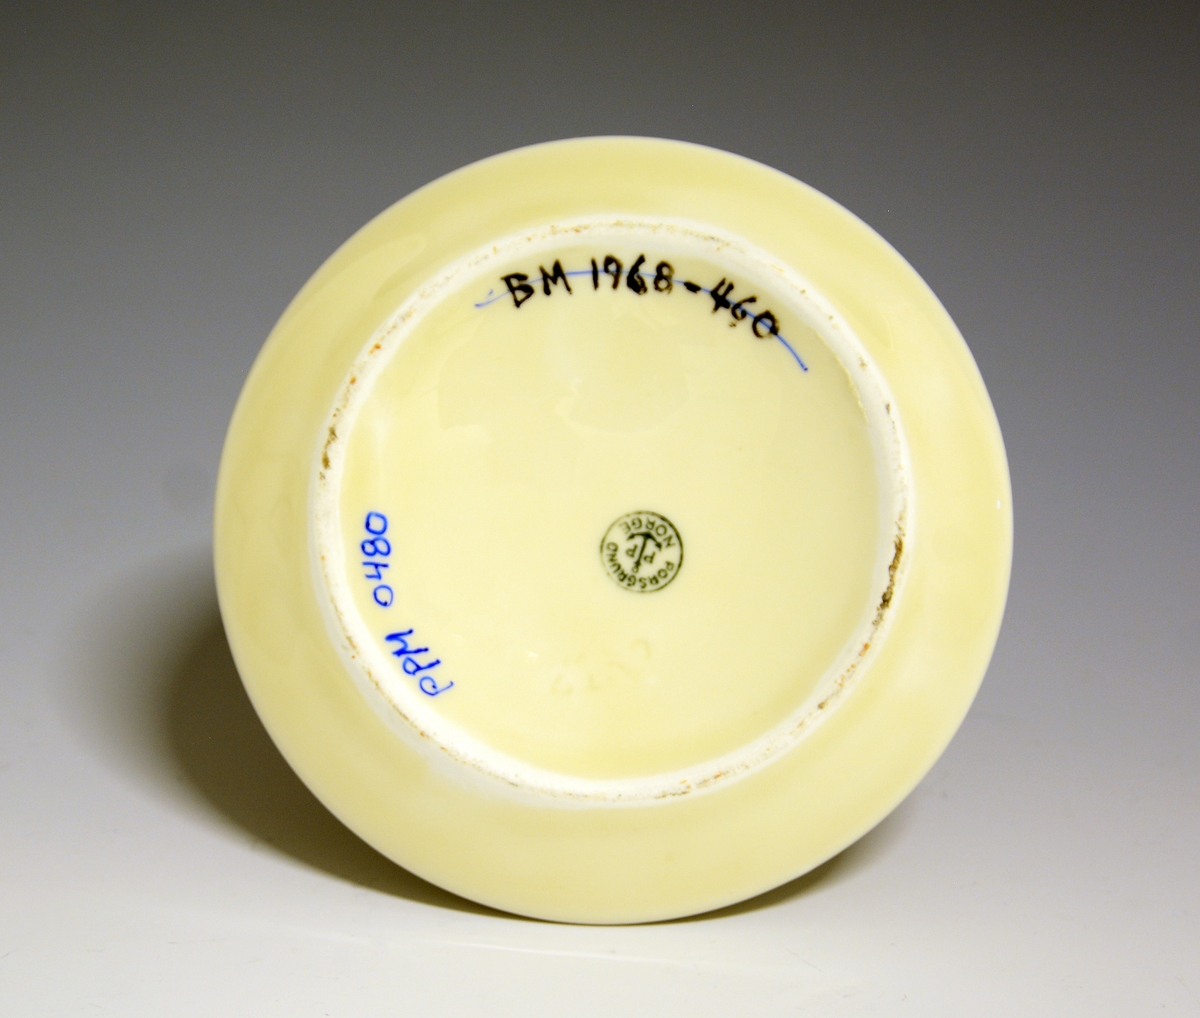 Prot: Liten vase av porselen. Lav kjegleform med skrå sider inn mot en mindre fotrand. Halsen har avkuttet kjegleform.
Nora Gulbrandsens modell 2132, tegnet i 1935.